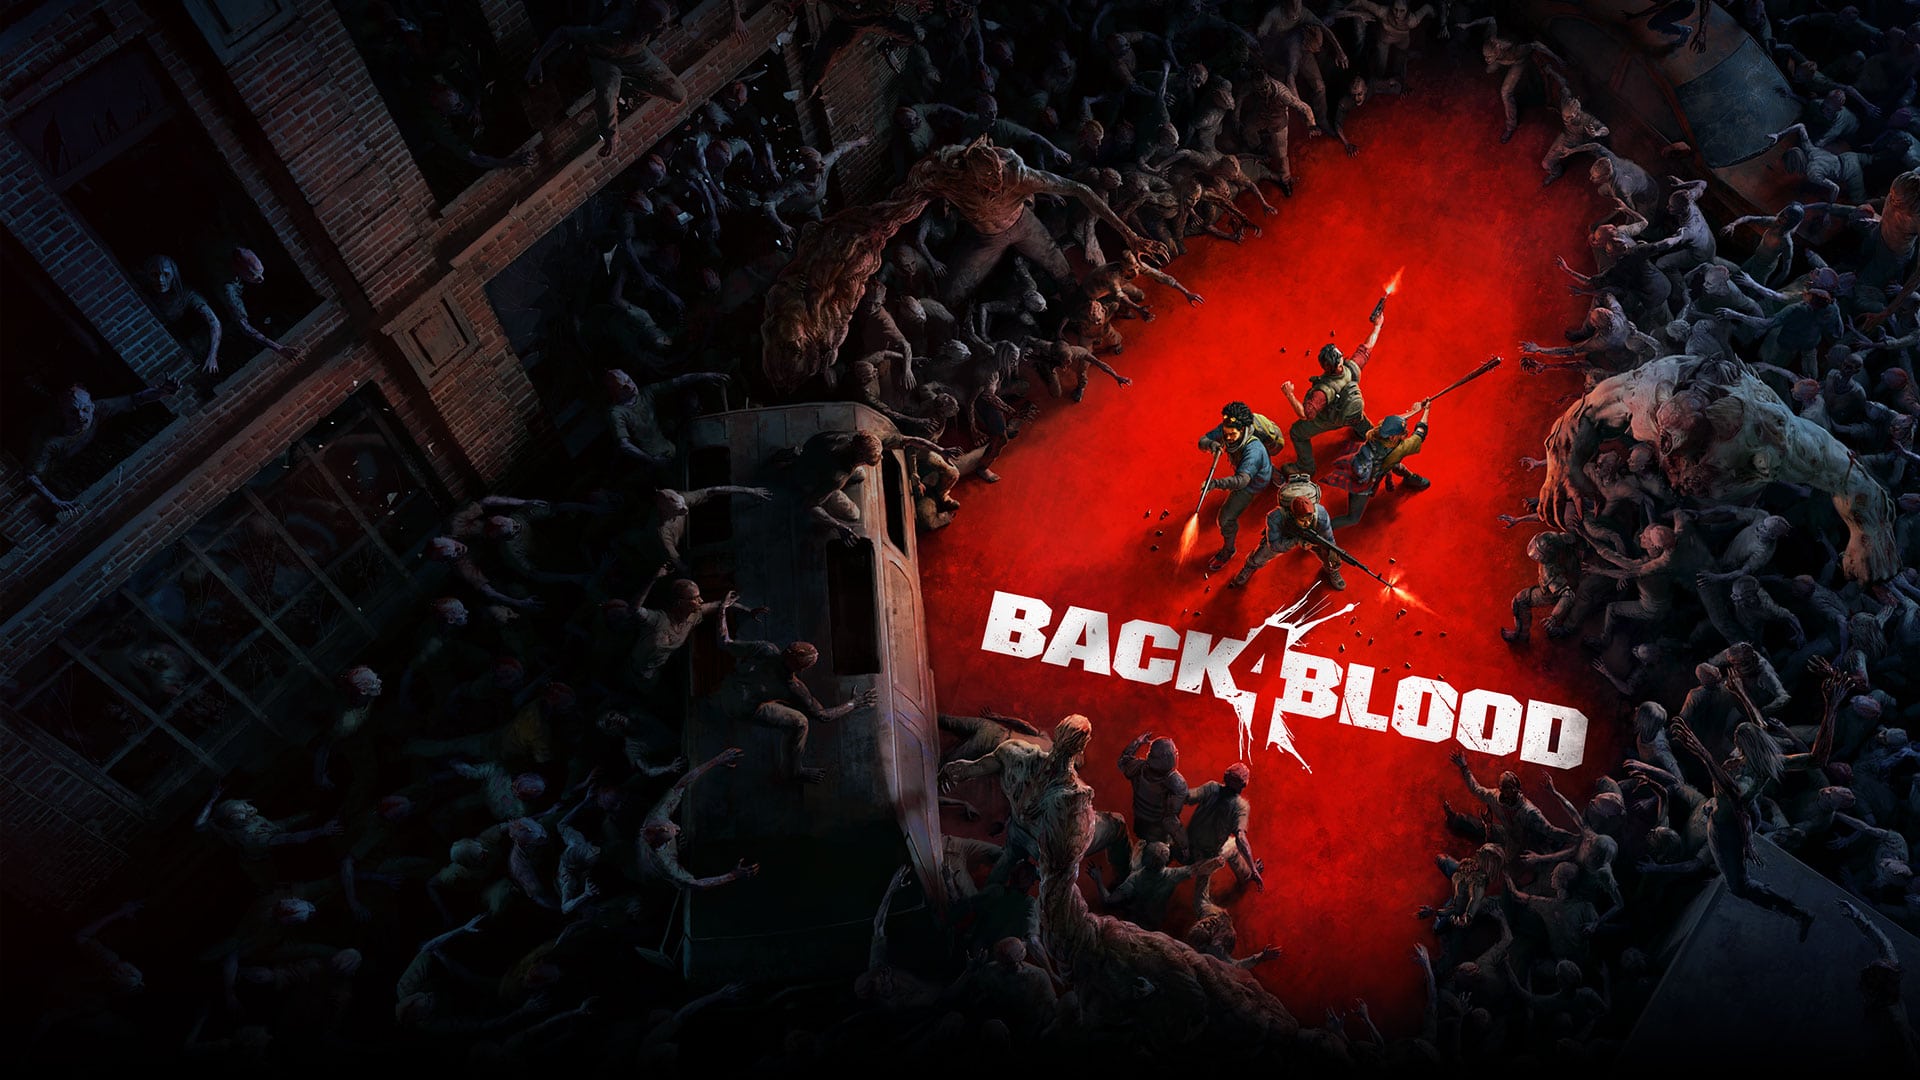 El primer DLC importante de Back 4 Blood se revela cuando llega a 10 millones de jugadores, GamersRD